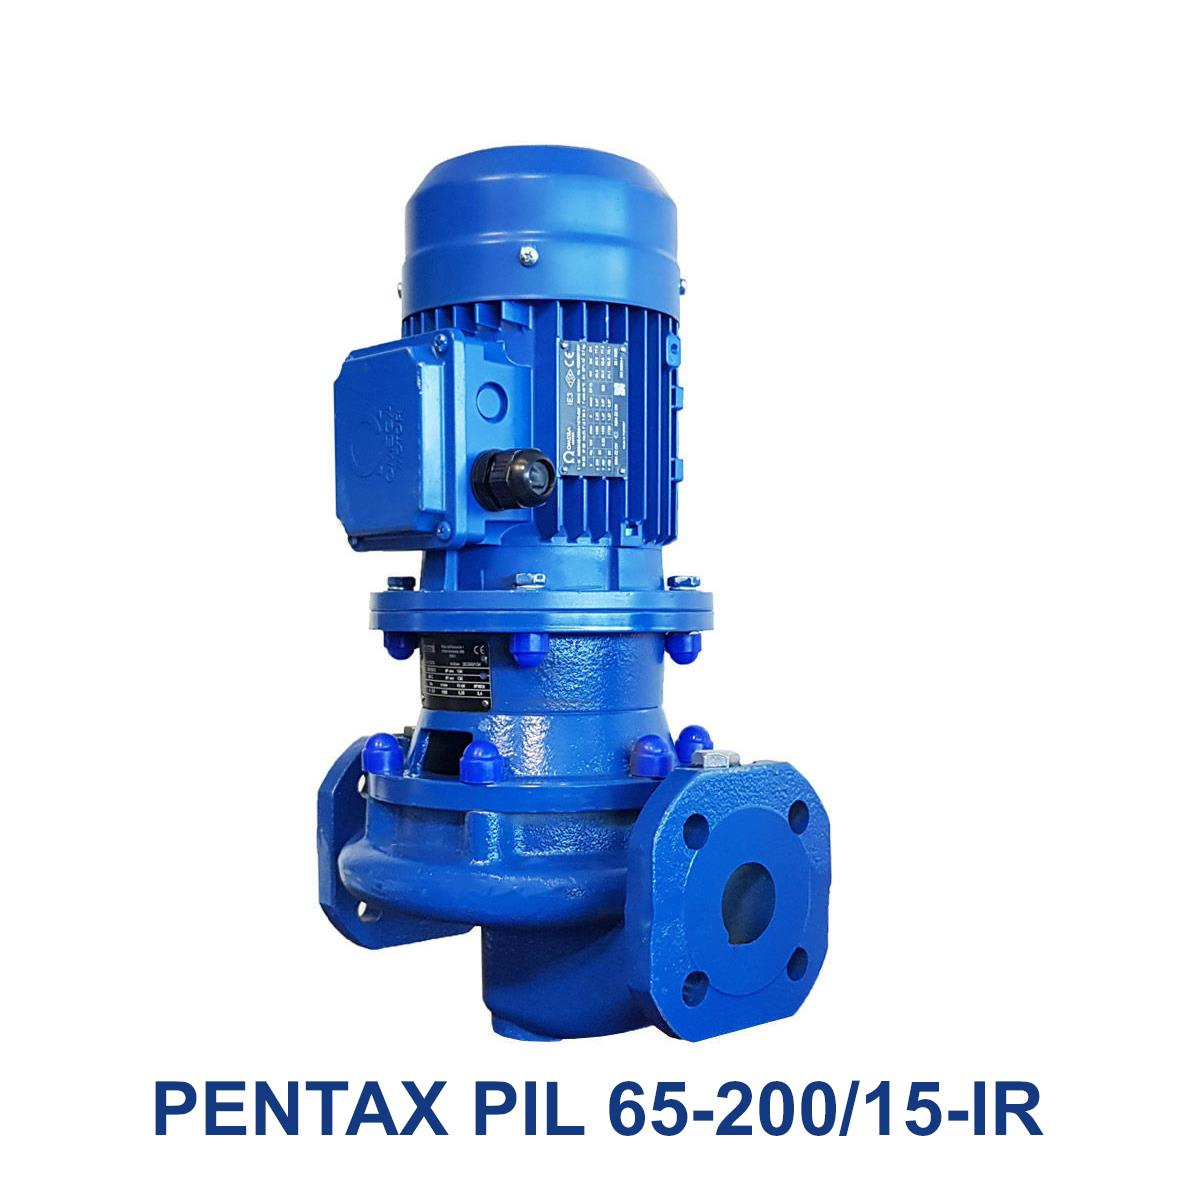 PENTAX-PIL-65-200-15-IR